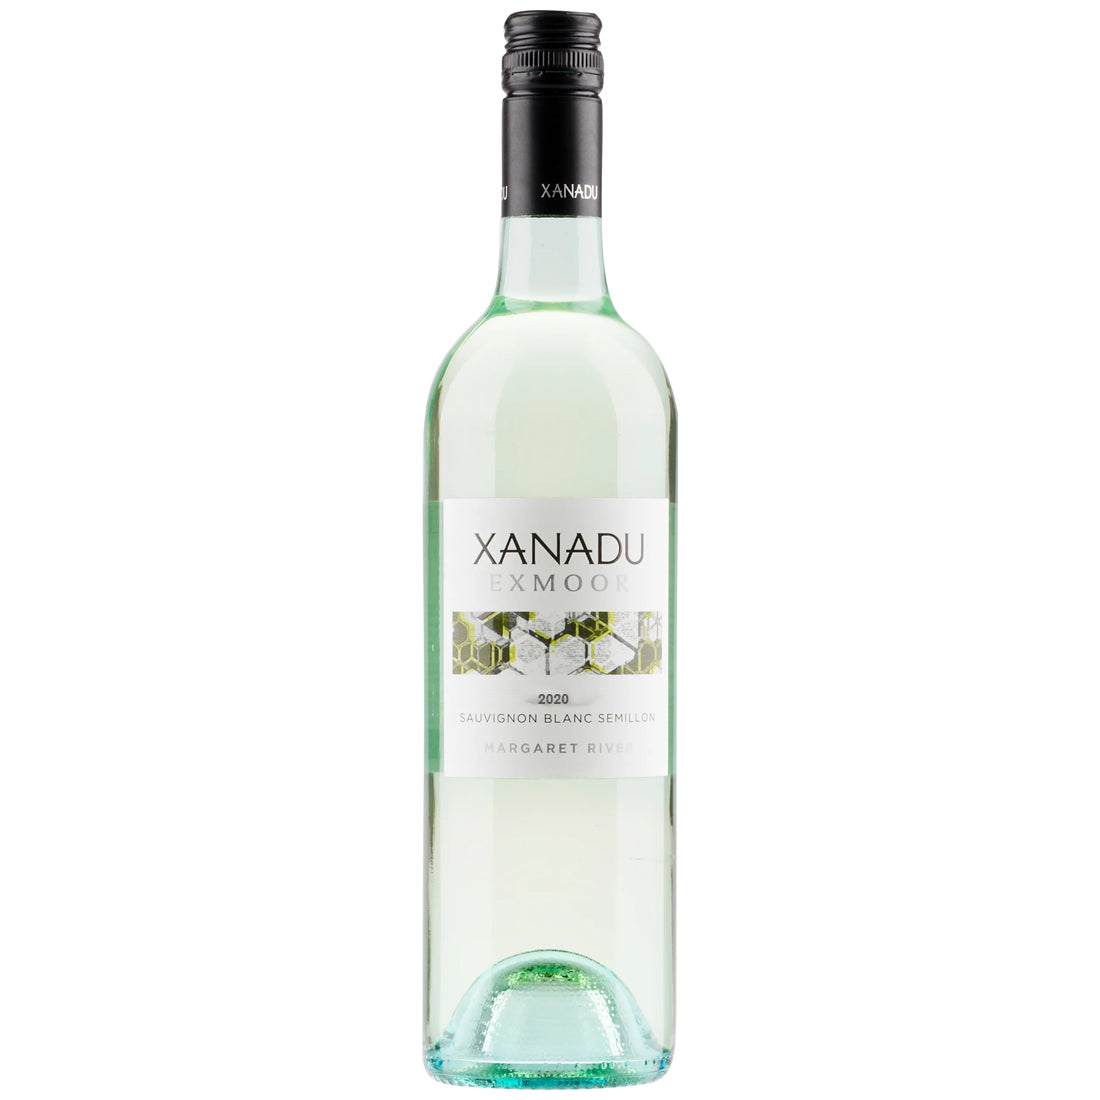 Xanadu Exmoor Sauvignon Blanc Sémillon 2020